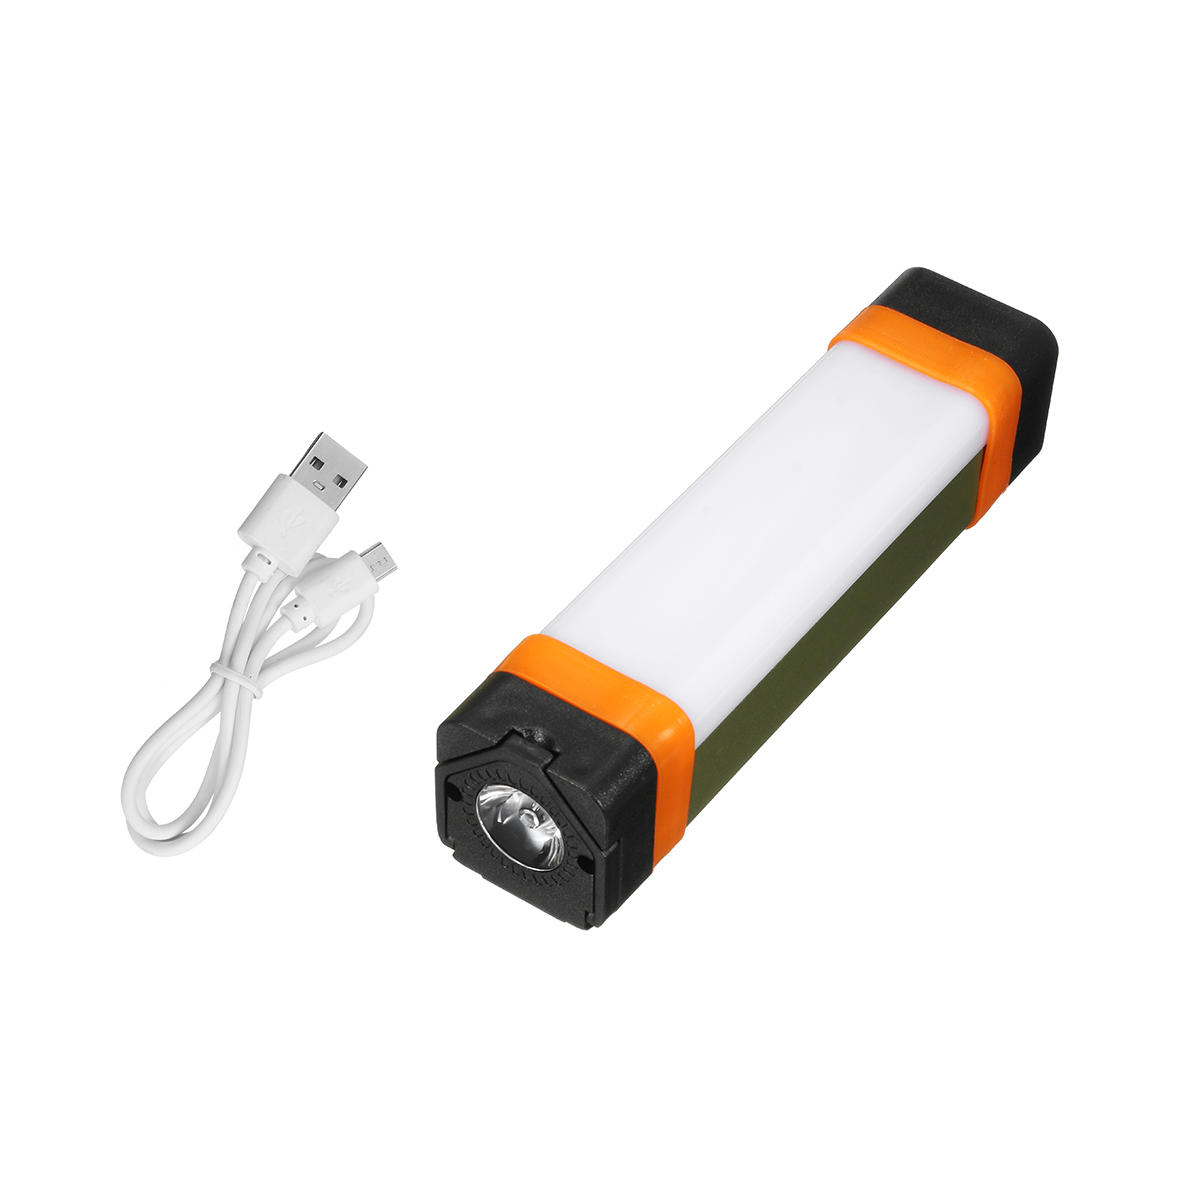 Multifunción para exteriores cámping Luz USB recargable Luz de emergencia Banco de energía Lámpara Luz de trabajo con Imán y Gancho